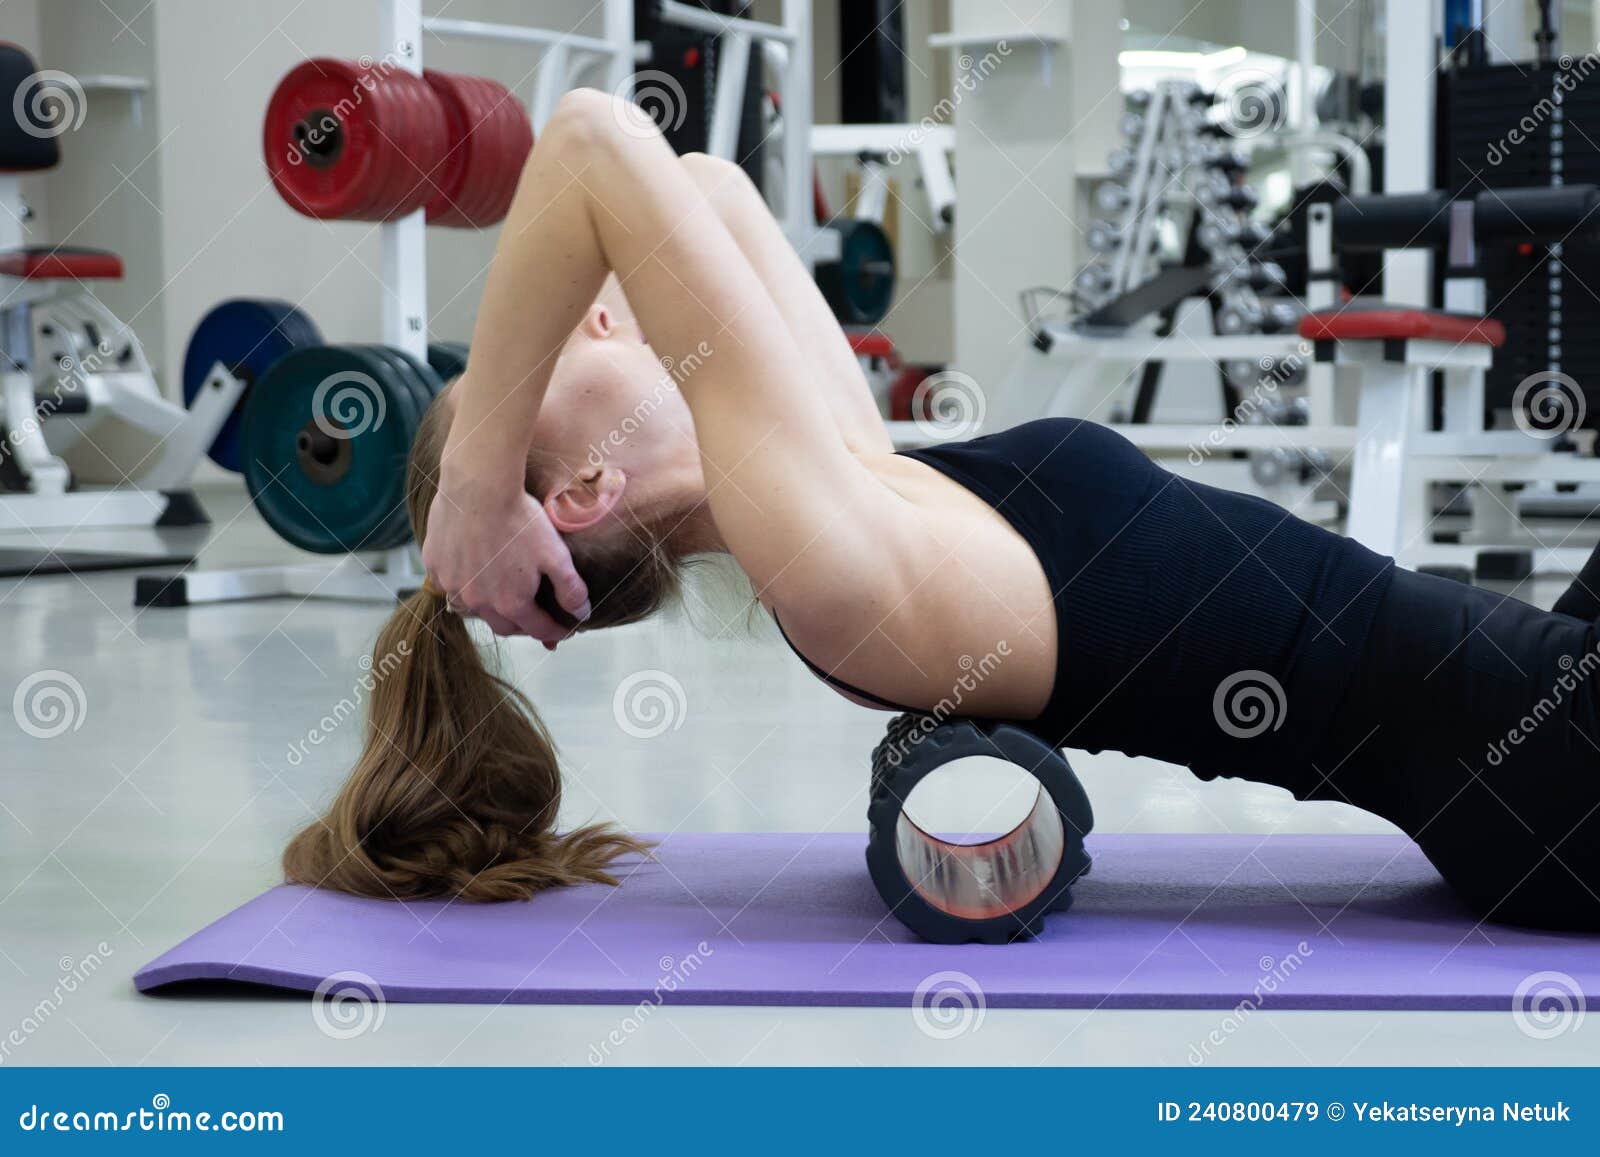 mujer delgada activa con ropa deportiva hace ejercicios de pilates